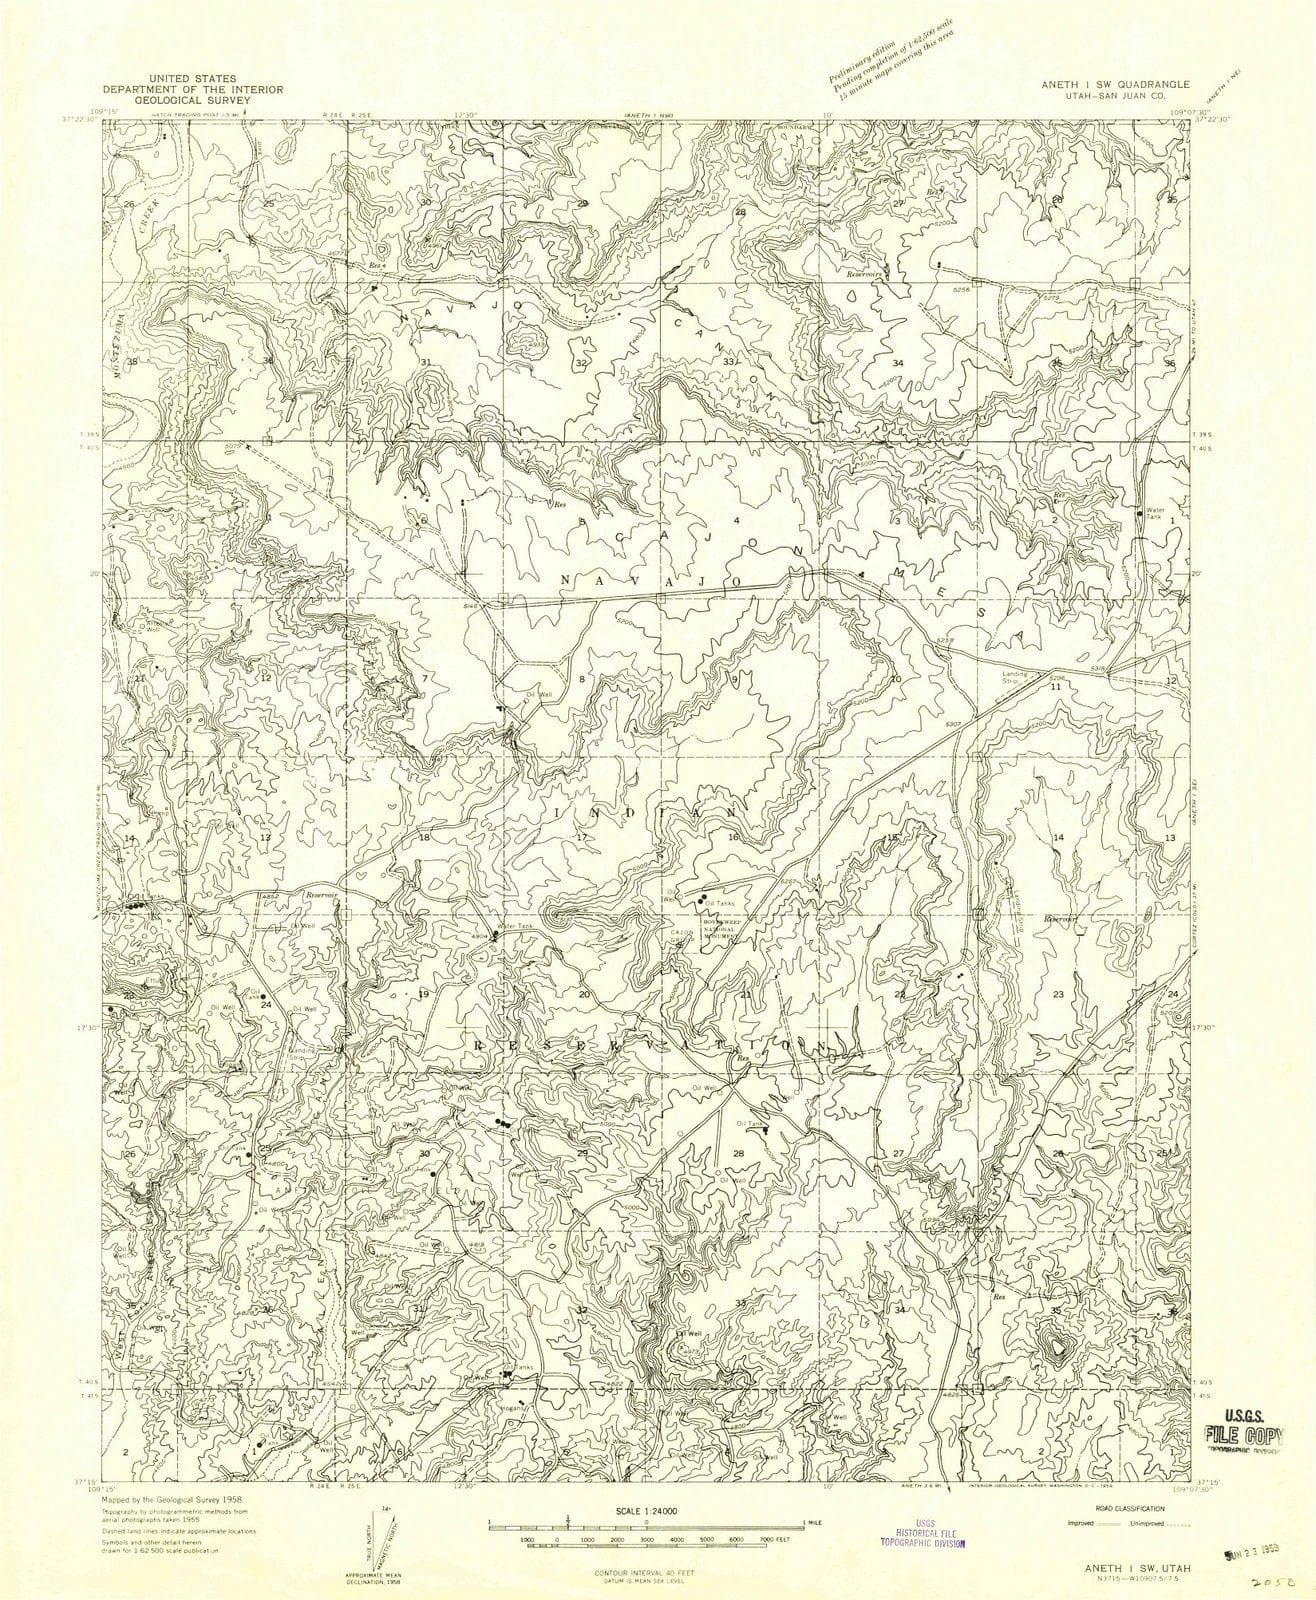 1958 Aneth 1, UT - Utah - USGS Topographic Map v2